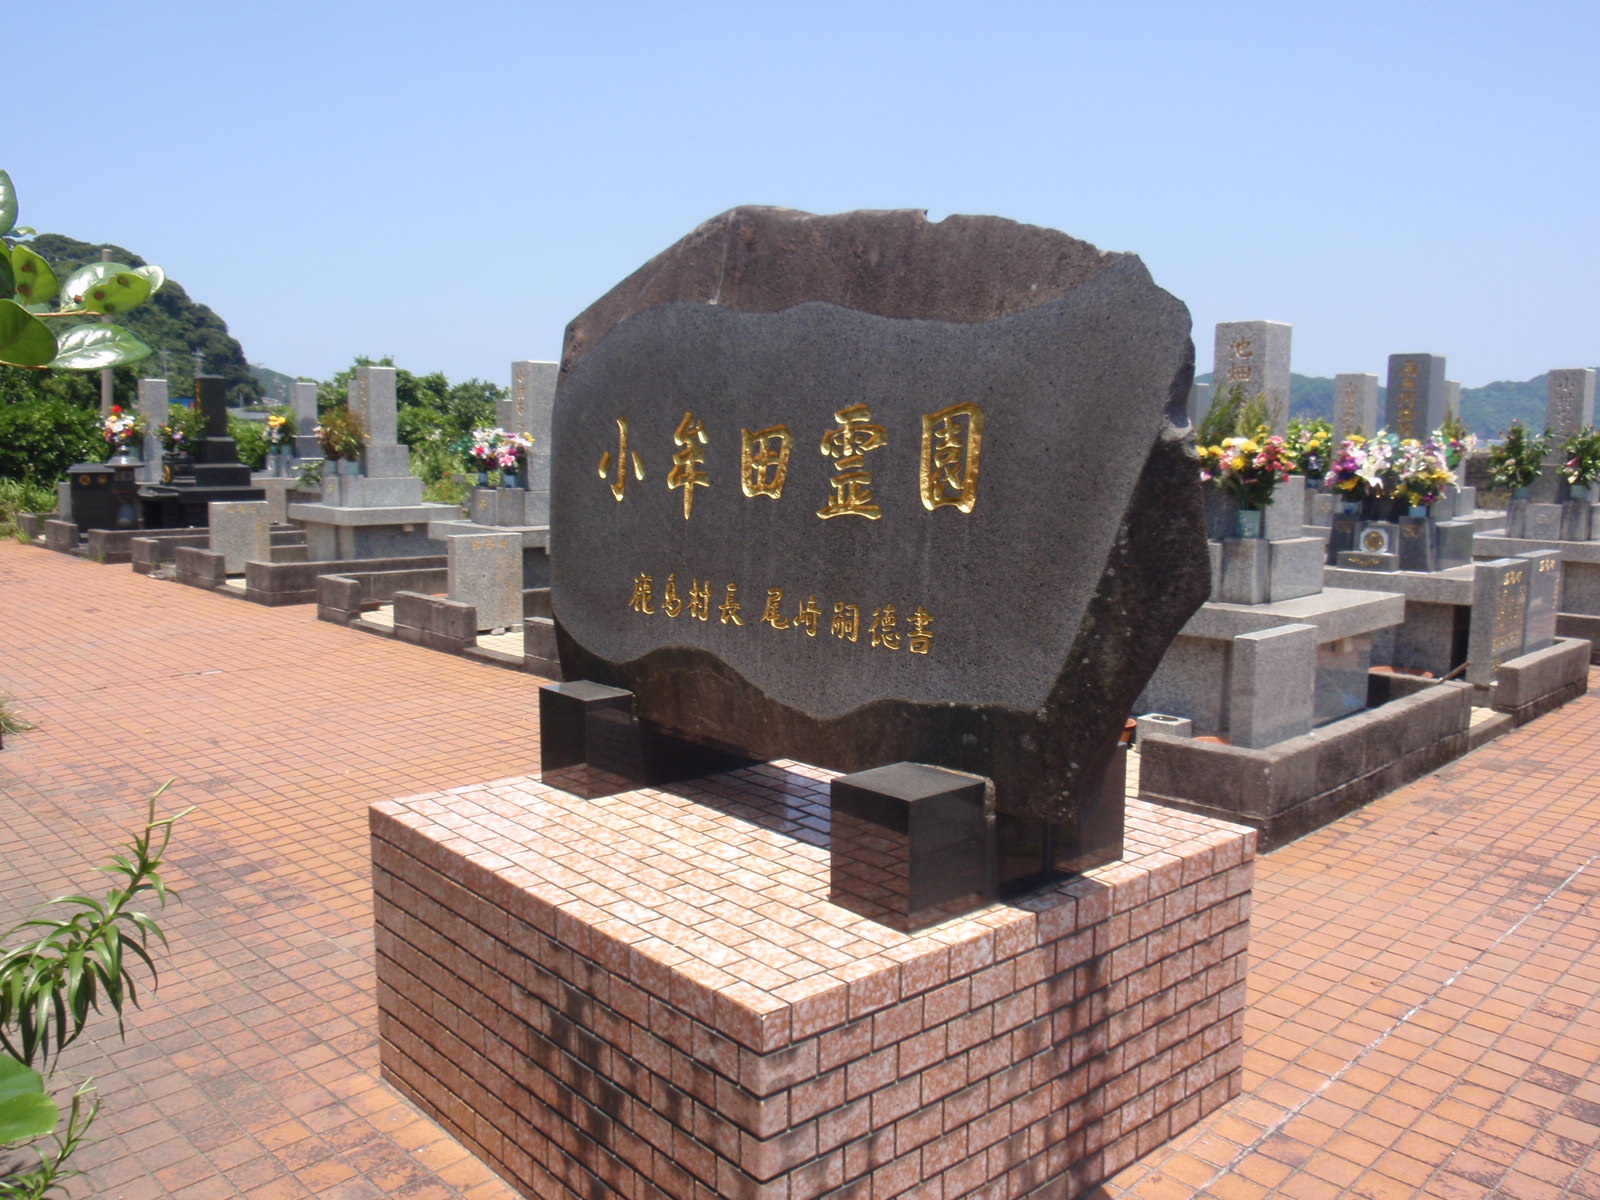 青空の下で整然と並ぶ花をお供えされたお墓を背景に、金色の文字で小牟田霊園と書かれた大きな黒い石が建てられている写真